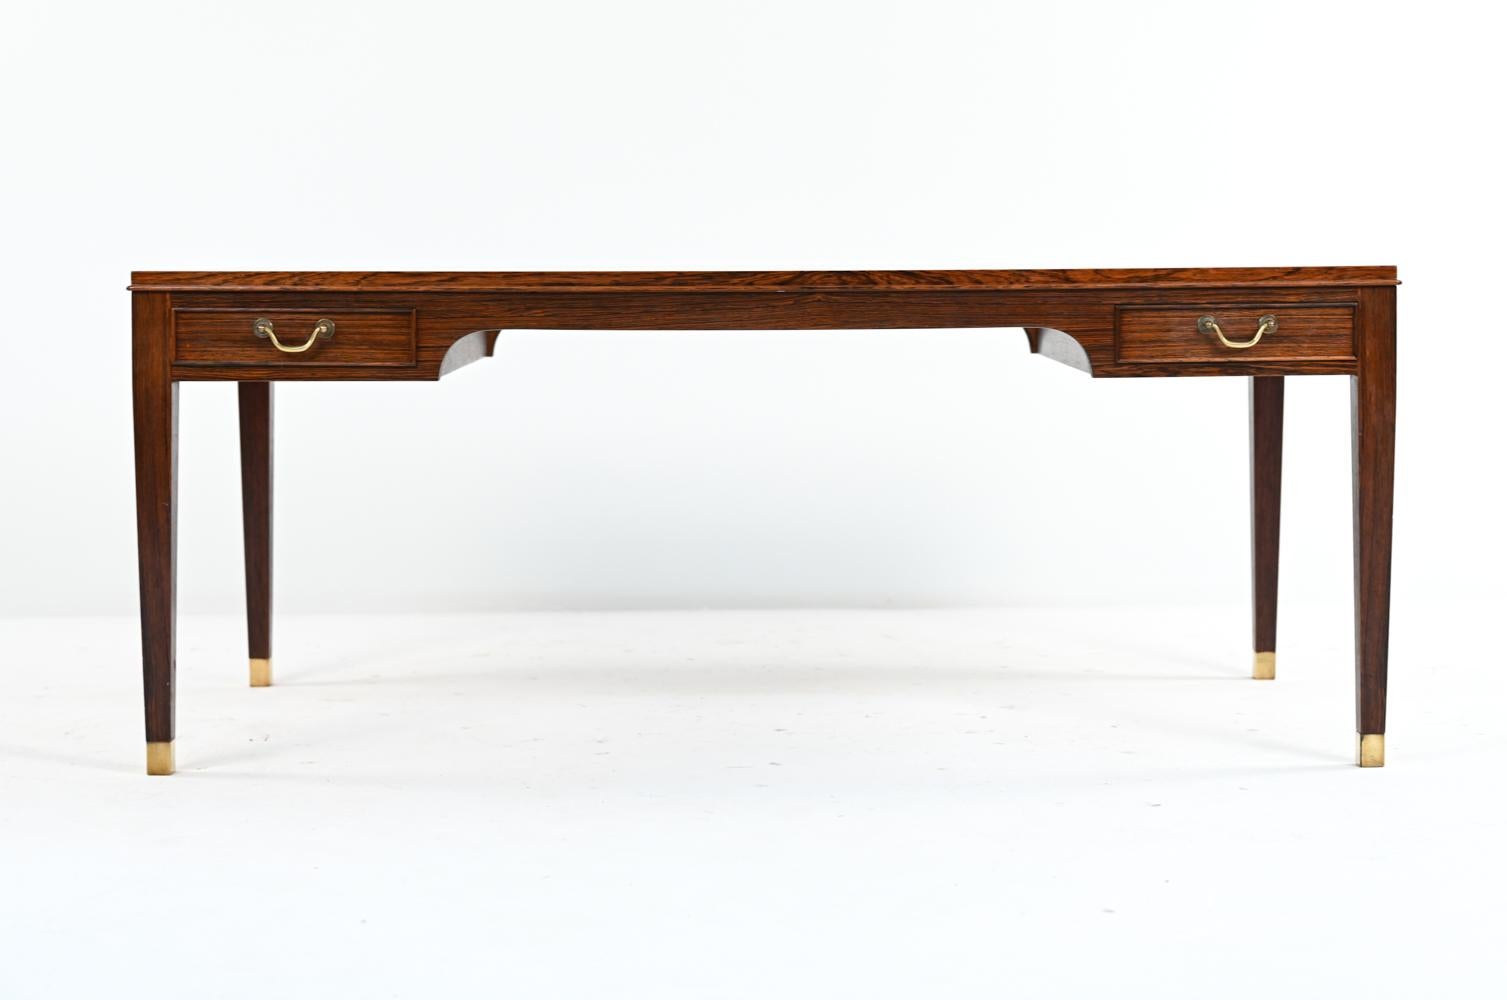 Une magnifique table basse danoise du milieu du siècle dernier, conçue par Frits Henningsen. Une forme rectangulaire minimaliste avec des poignées en laiton et des pieds en laiton mélange le style moderne scandinave avec des éléments traditionnels,